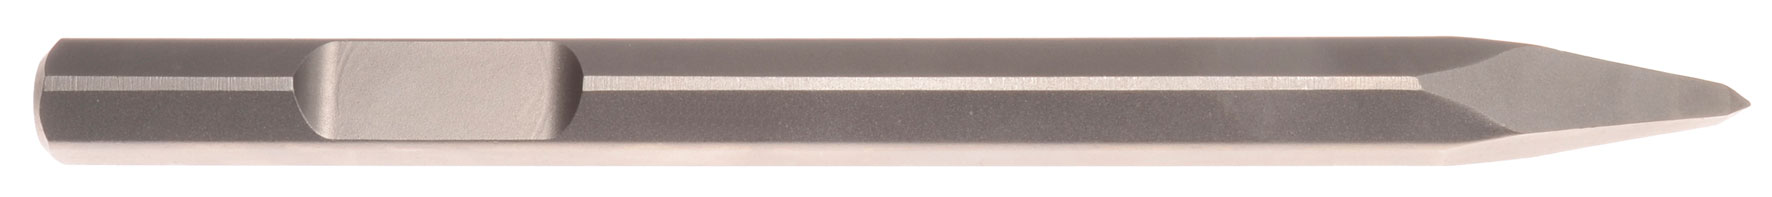 Spitzmeißel Schaft 29 mm 6-kant